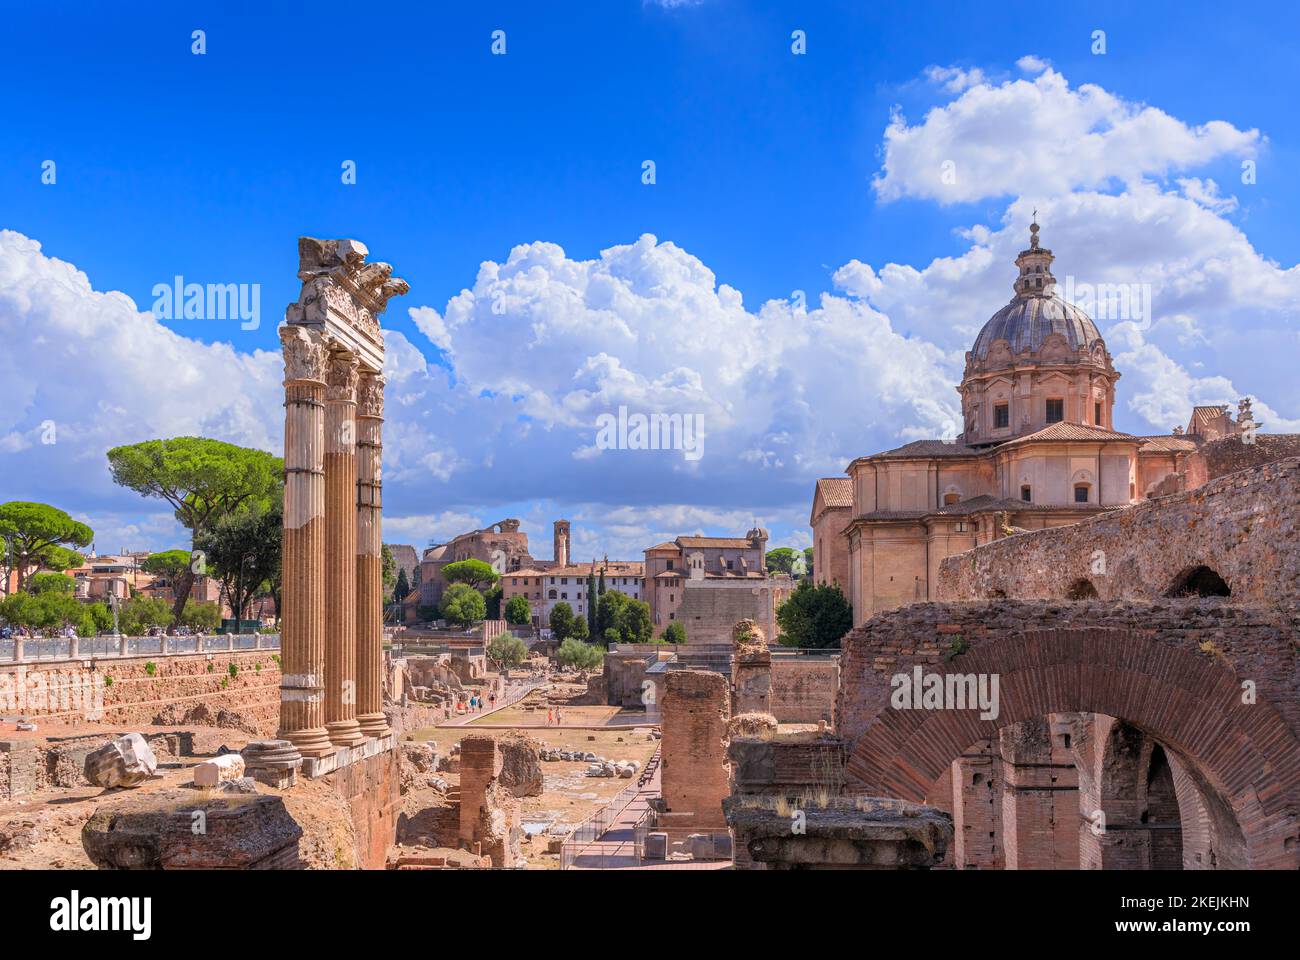 Ruines romaines anciennes du Forum de César à Rome, Italie. Banque D'Images